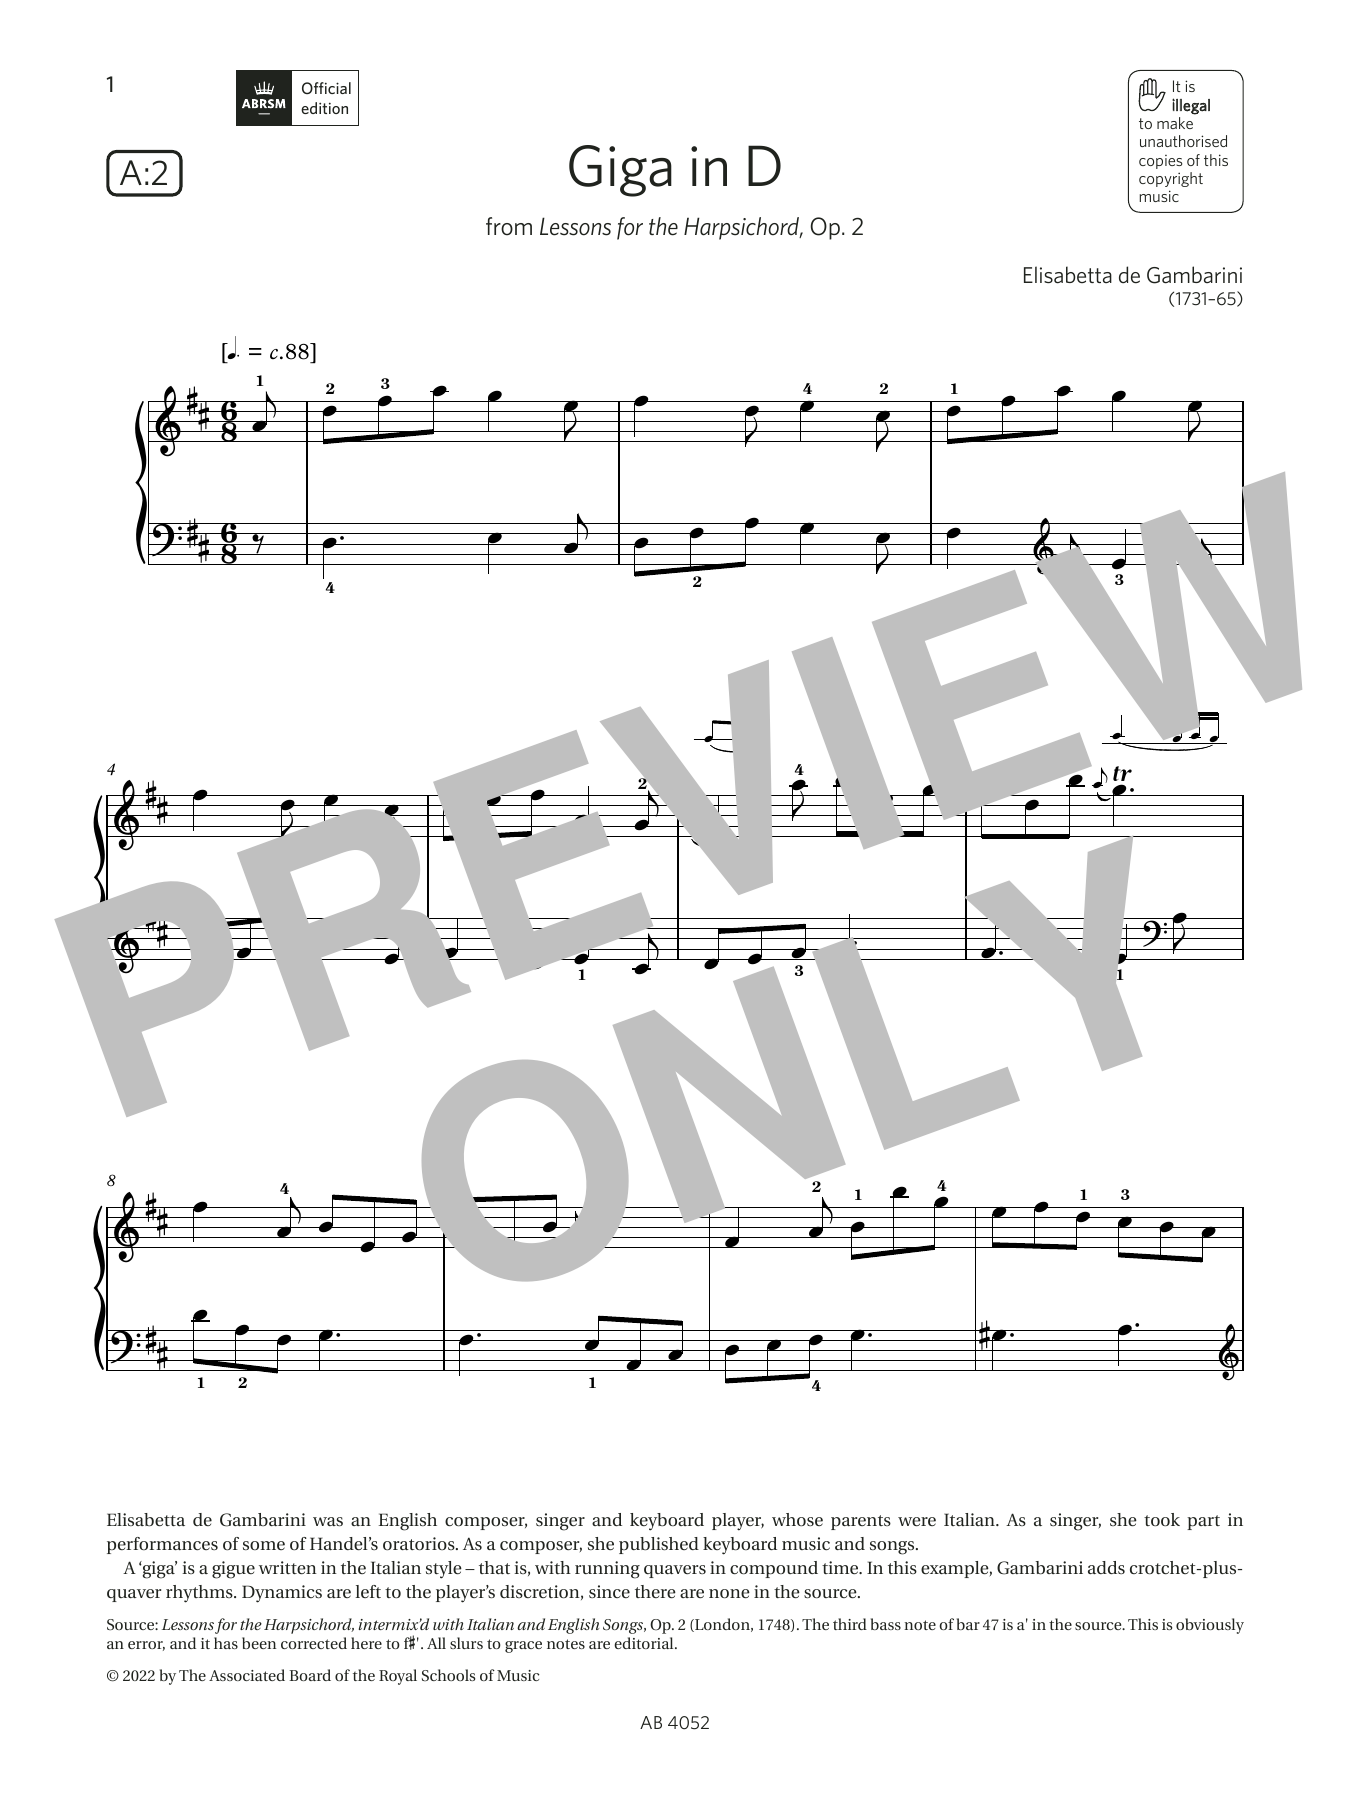 Download Elisabetta de Gambarini Giga in D (Grade 6, list A2, from the A Sheet Music